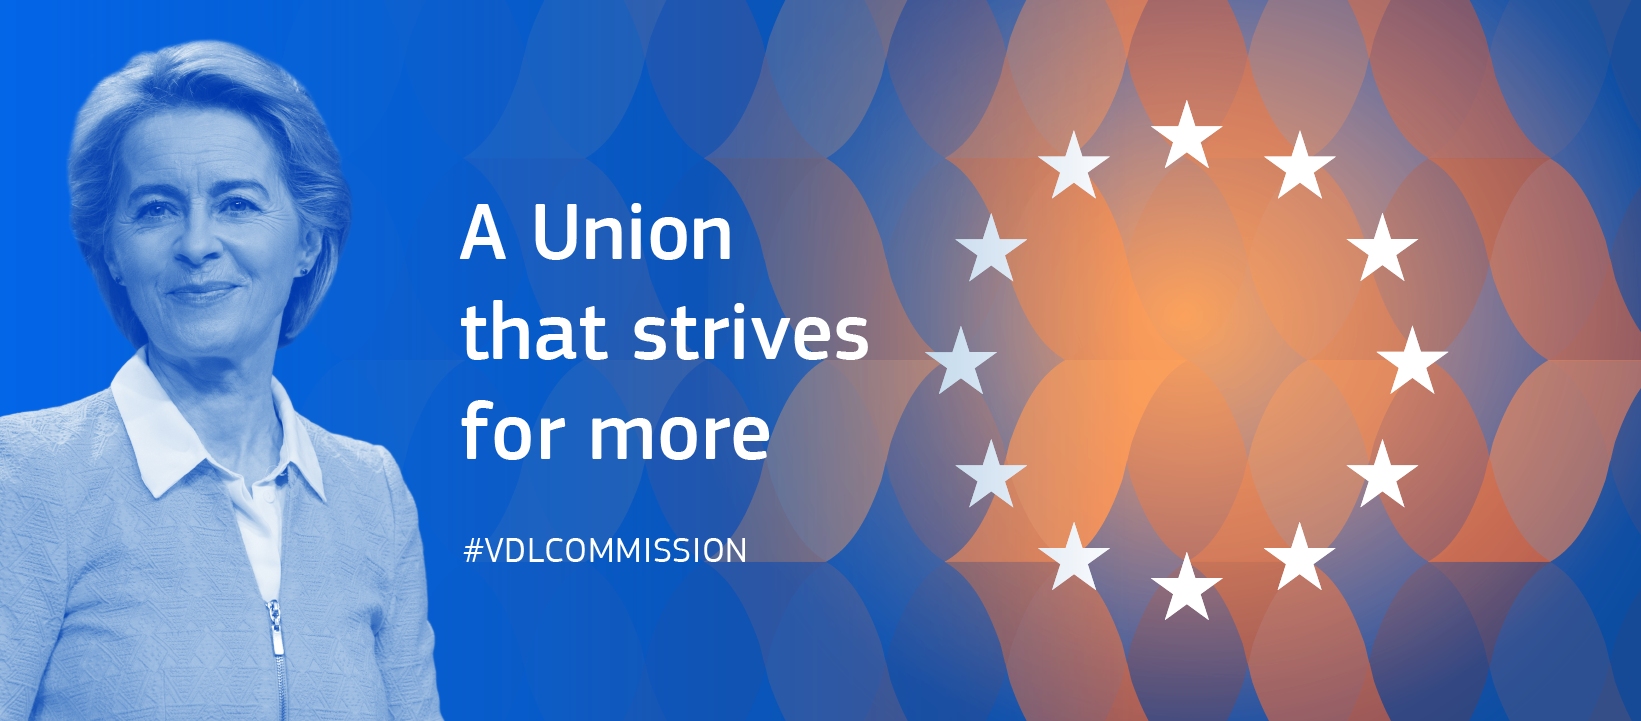 Comissão Europeia Von der Leyen 2019-2024